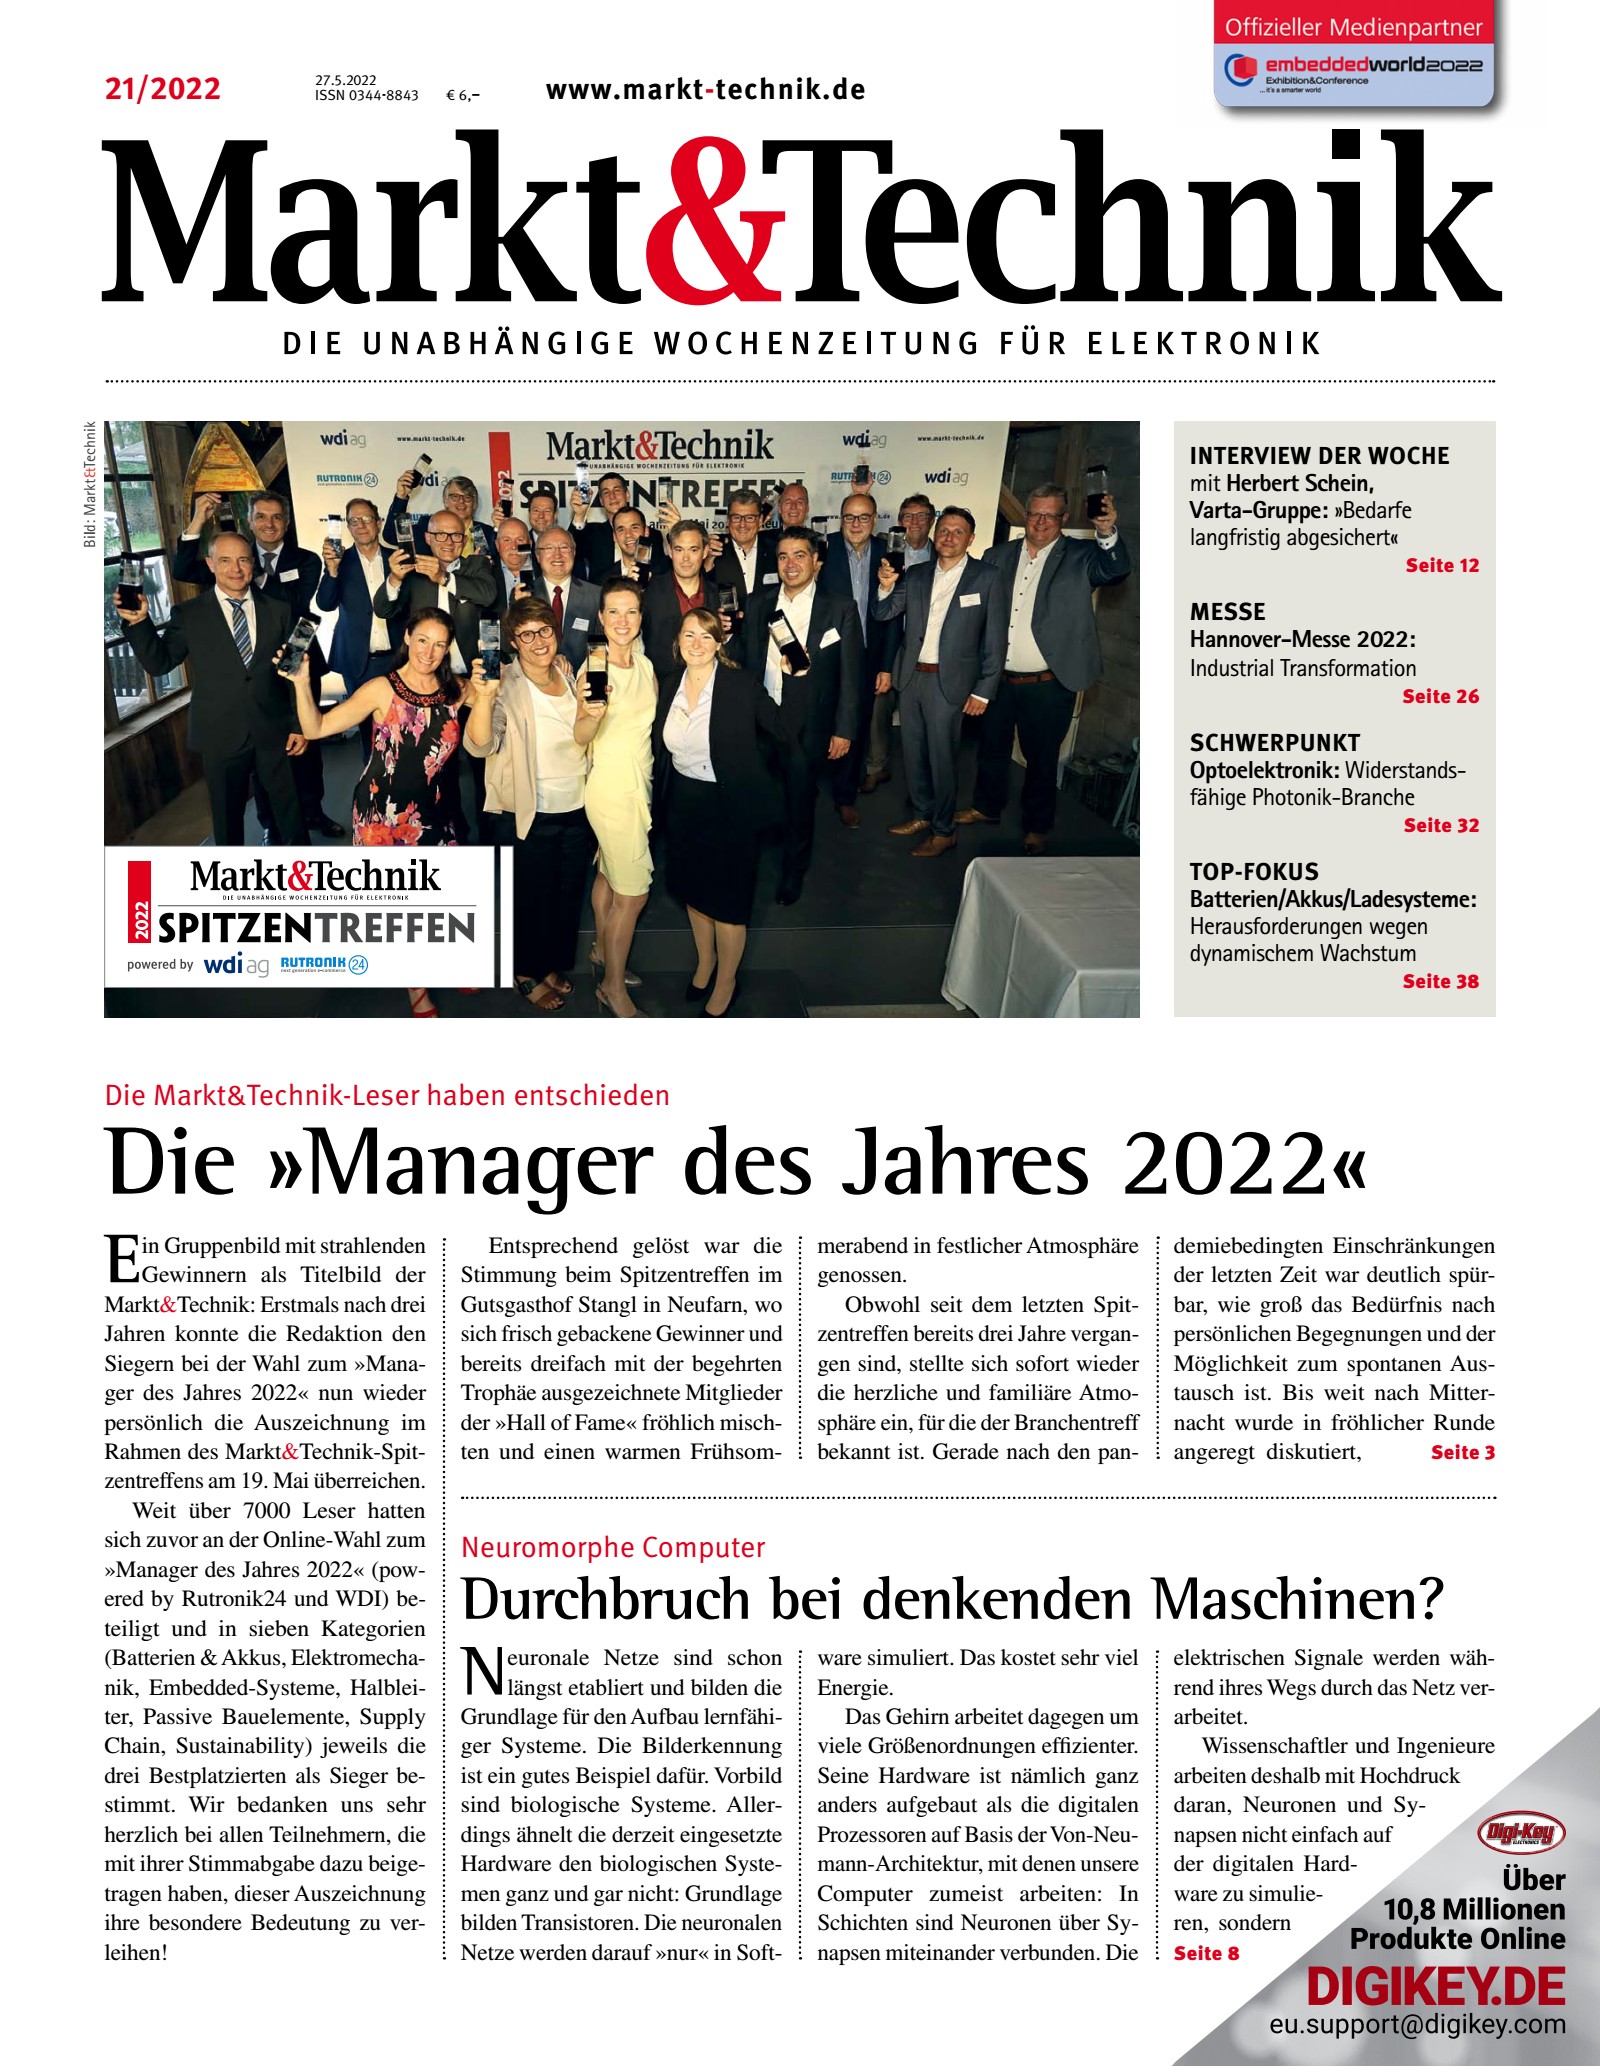 Markt&Technik 21/2022 Digital